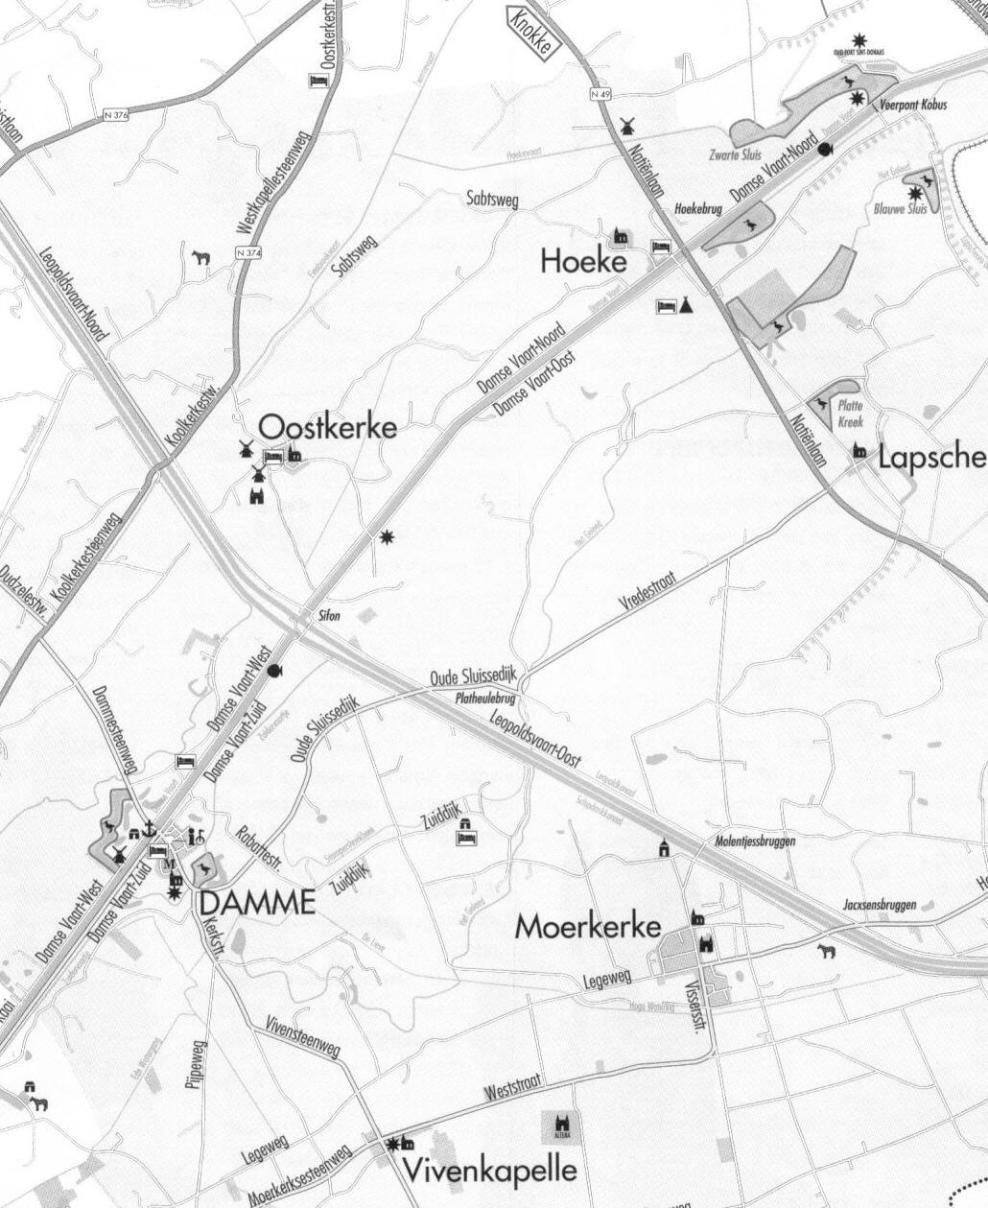 4 3 2 1 Spegelsweg, Branddijk : in 1269 onderbroken en door Zuiddijk de Lieve ( bleven ) onderbroken ( ) 1. Spegelsweg, 2.